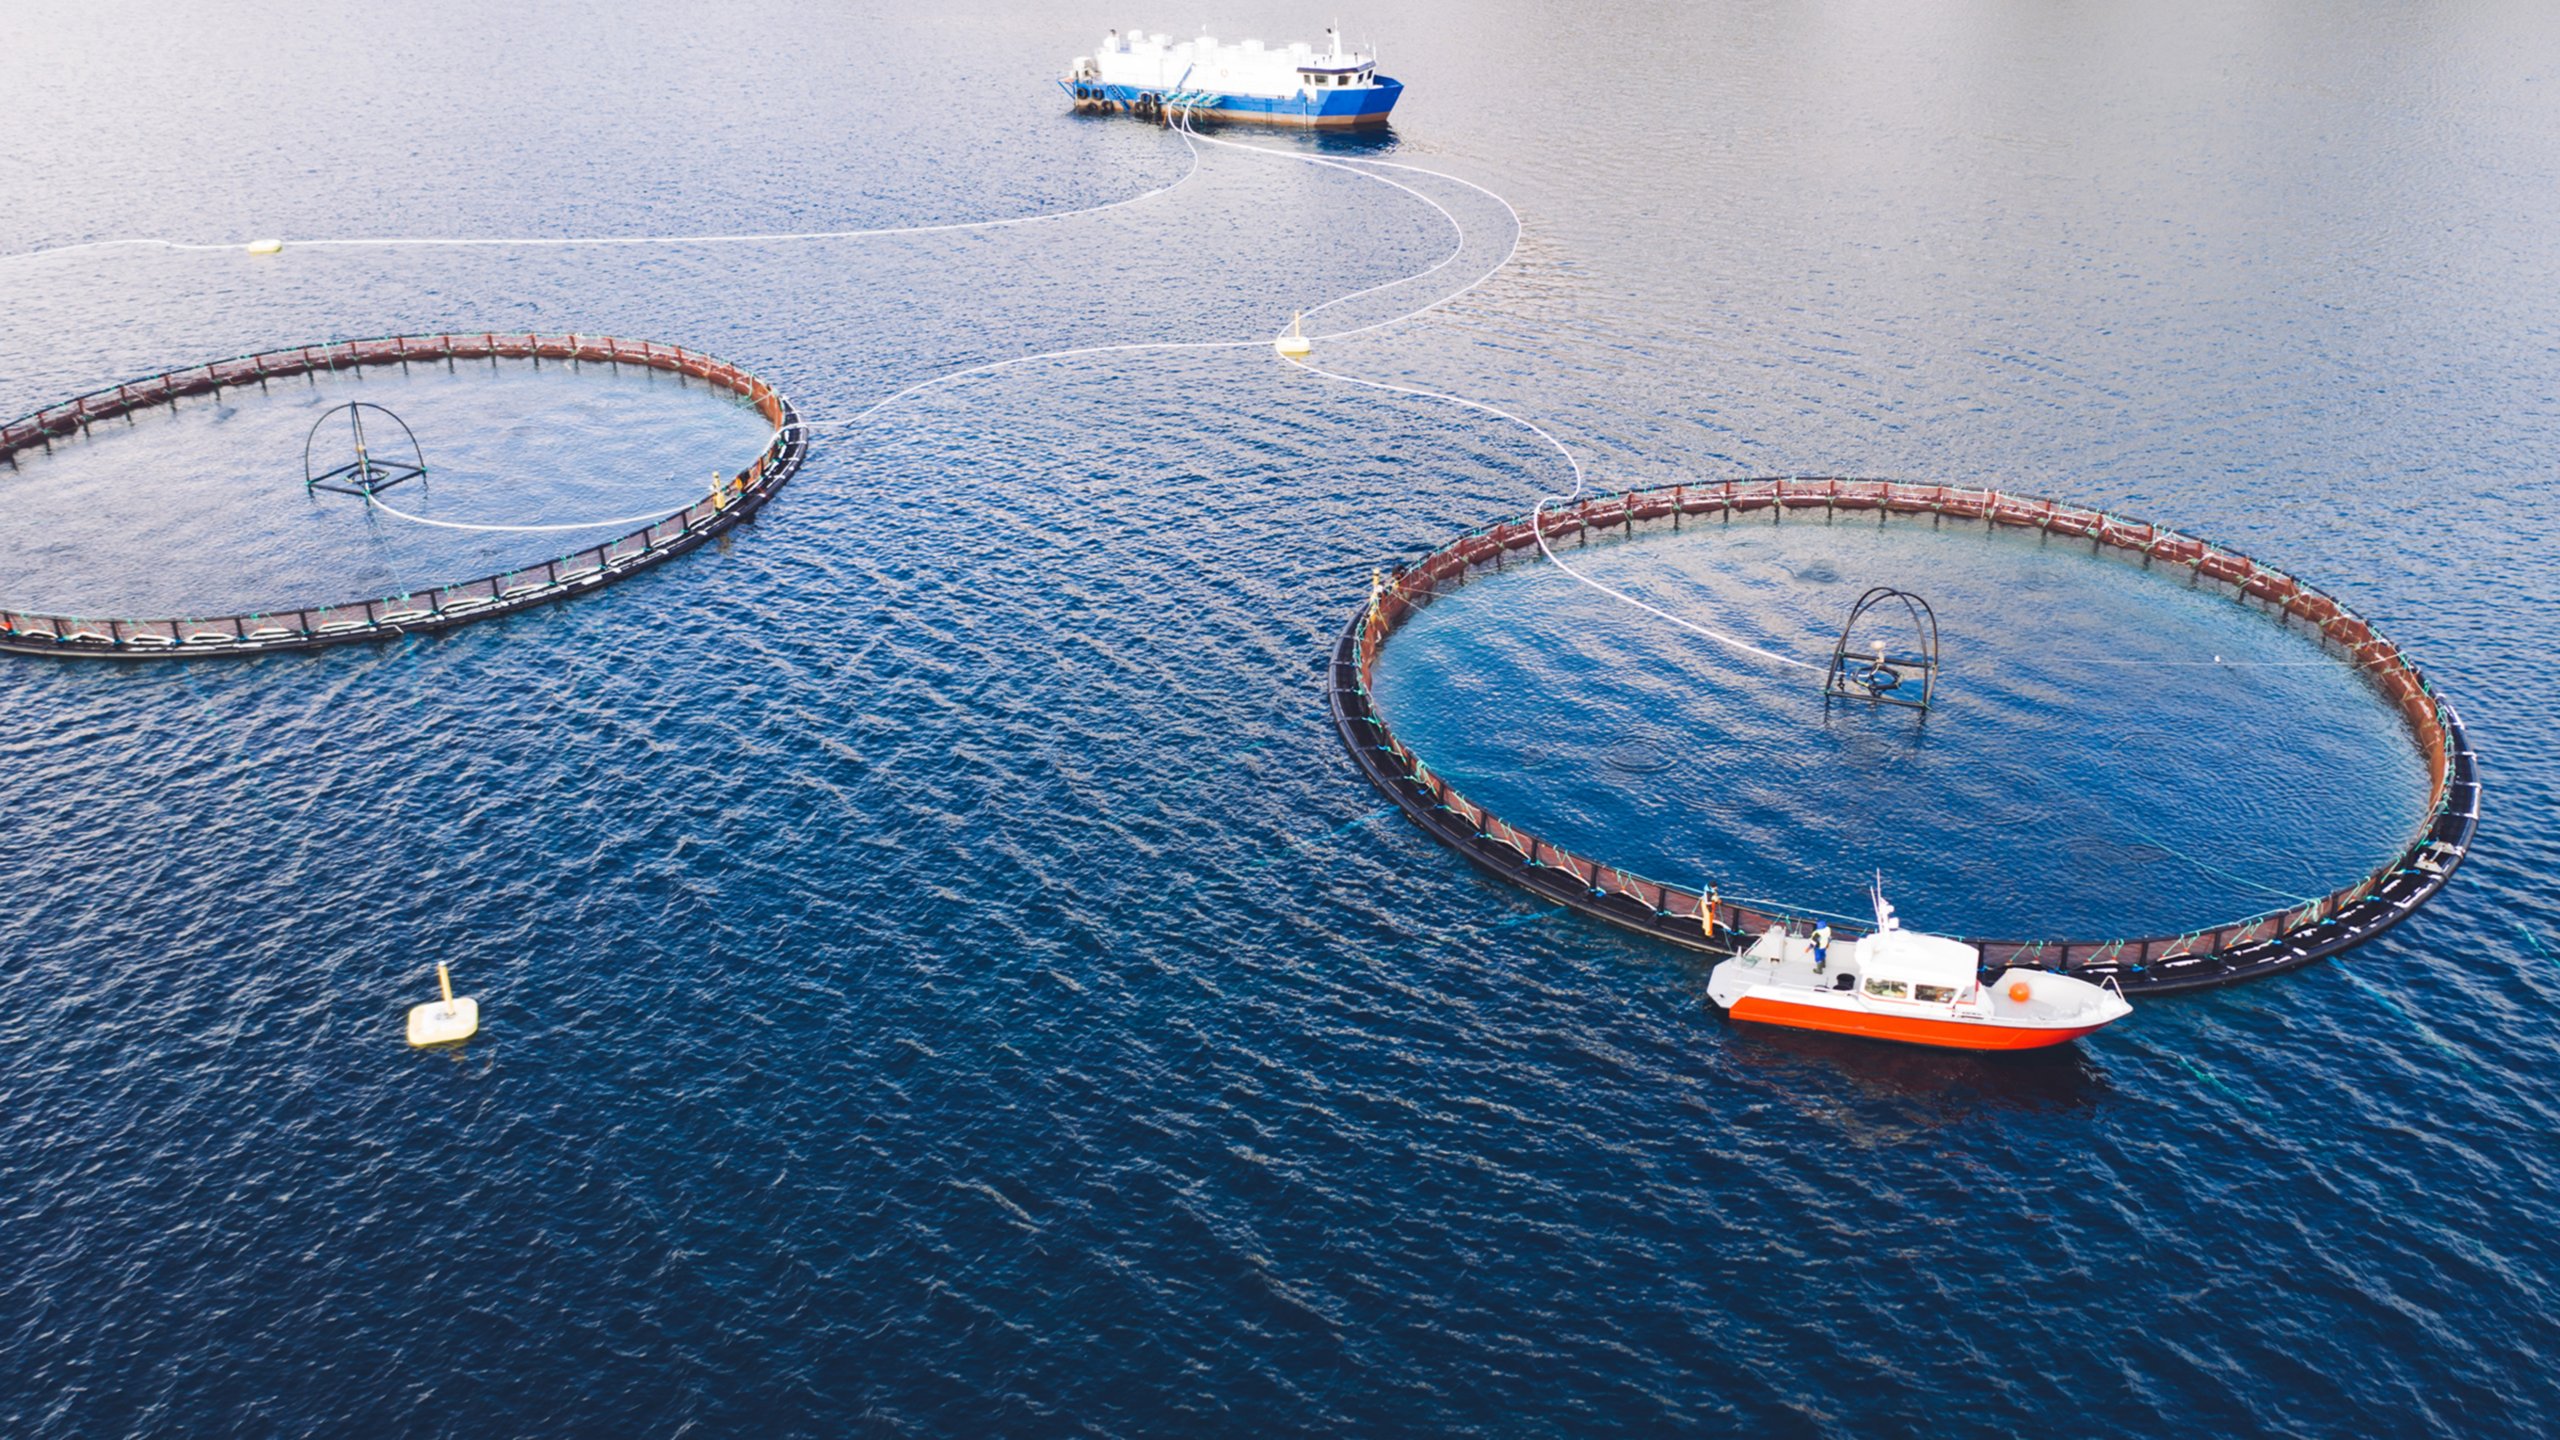 Deux cages pour l’élevage de poissons en mer. Un grand bateau de pêche est relié aux deux cages près du bas de l’image. Un bateau de pêche plus petit est près du haut de la cage sur la droite.